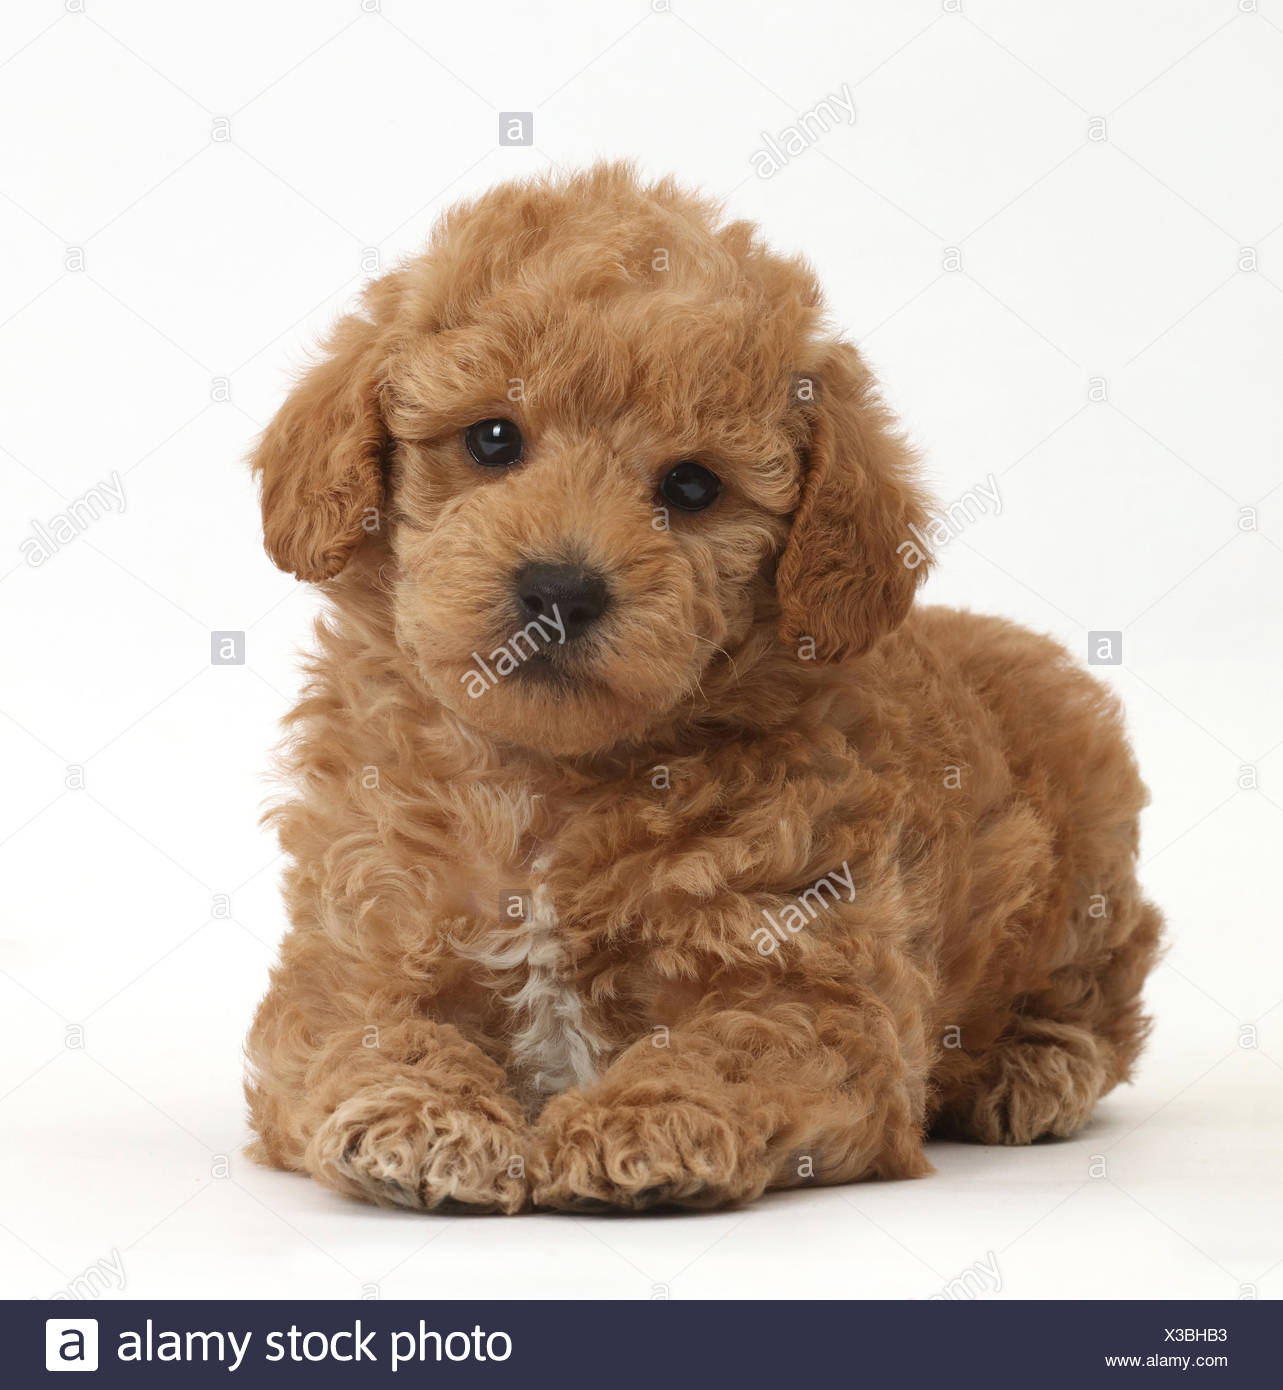 toy poodle golden retriever